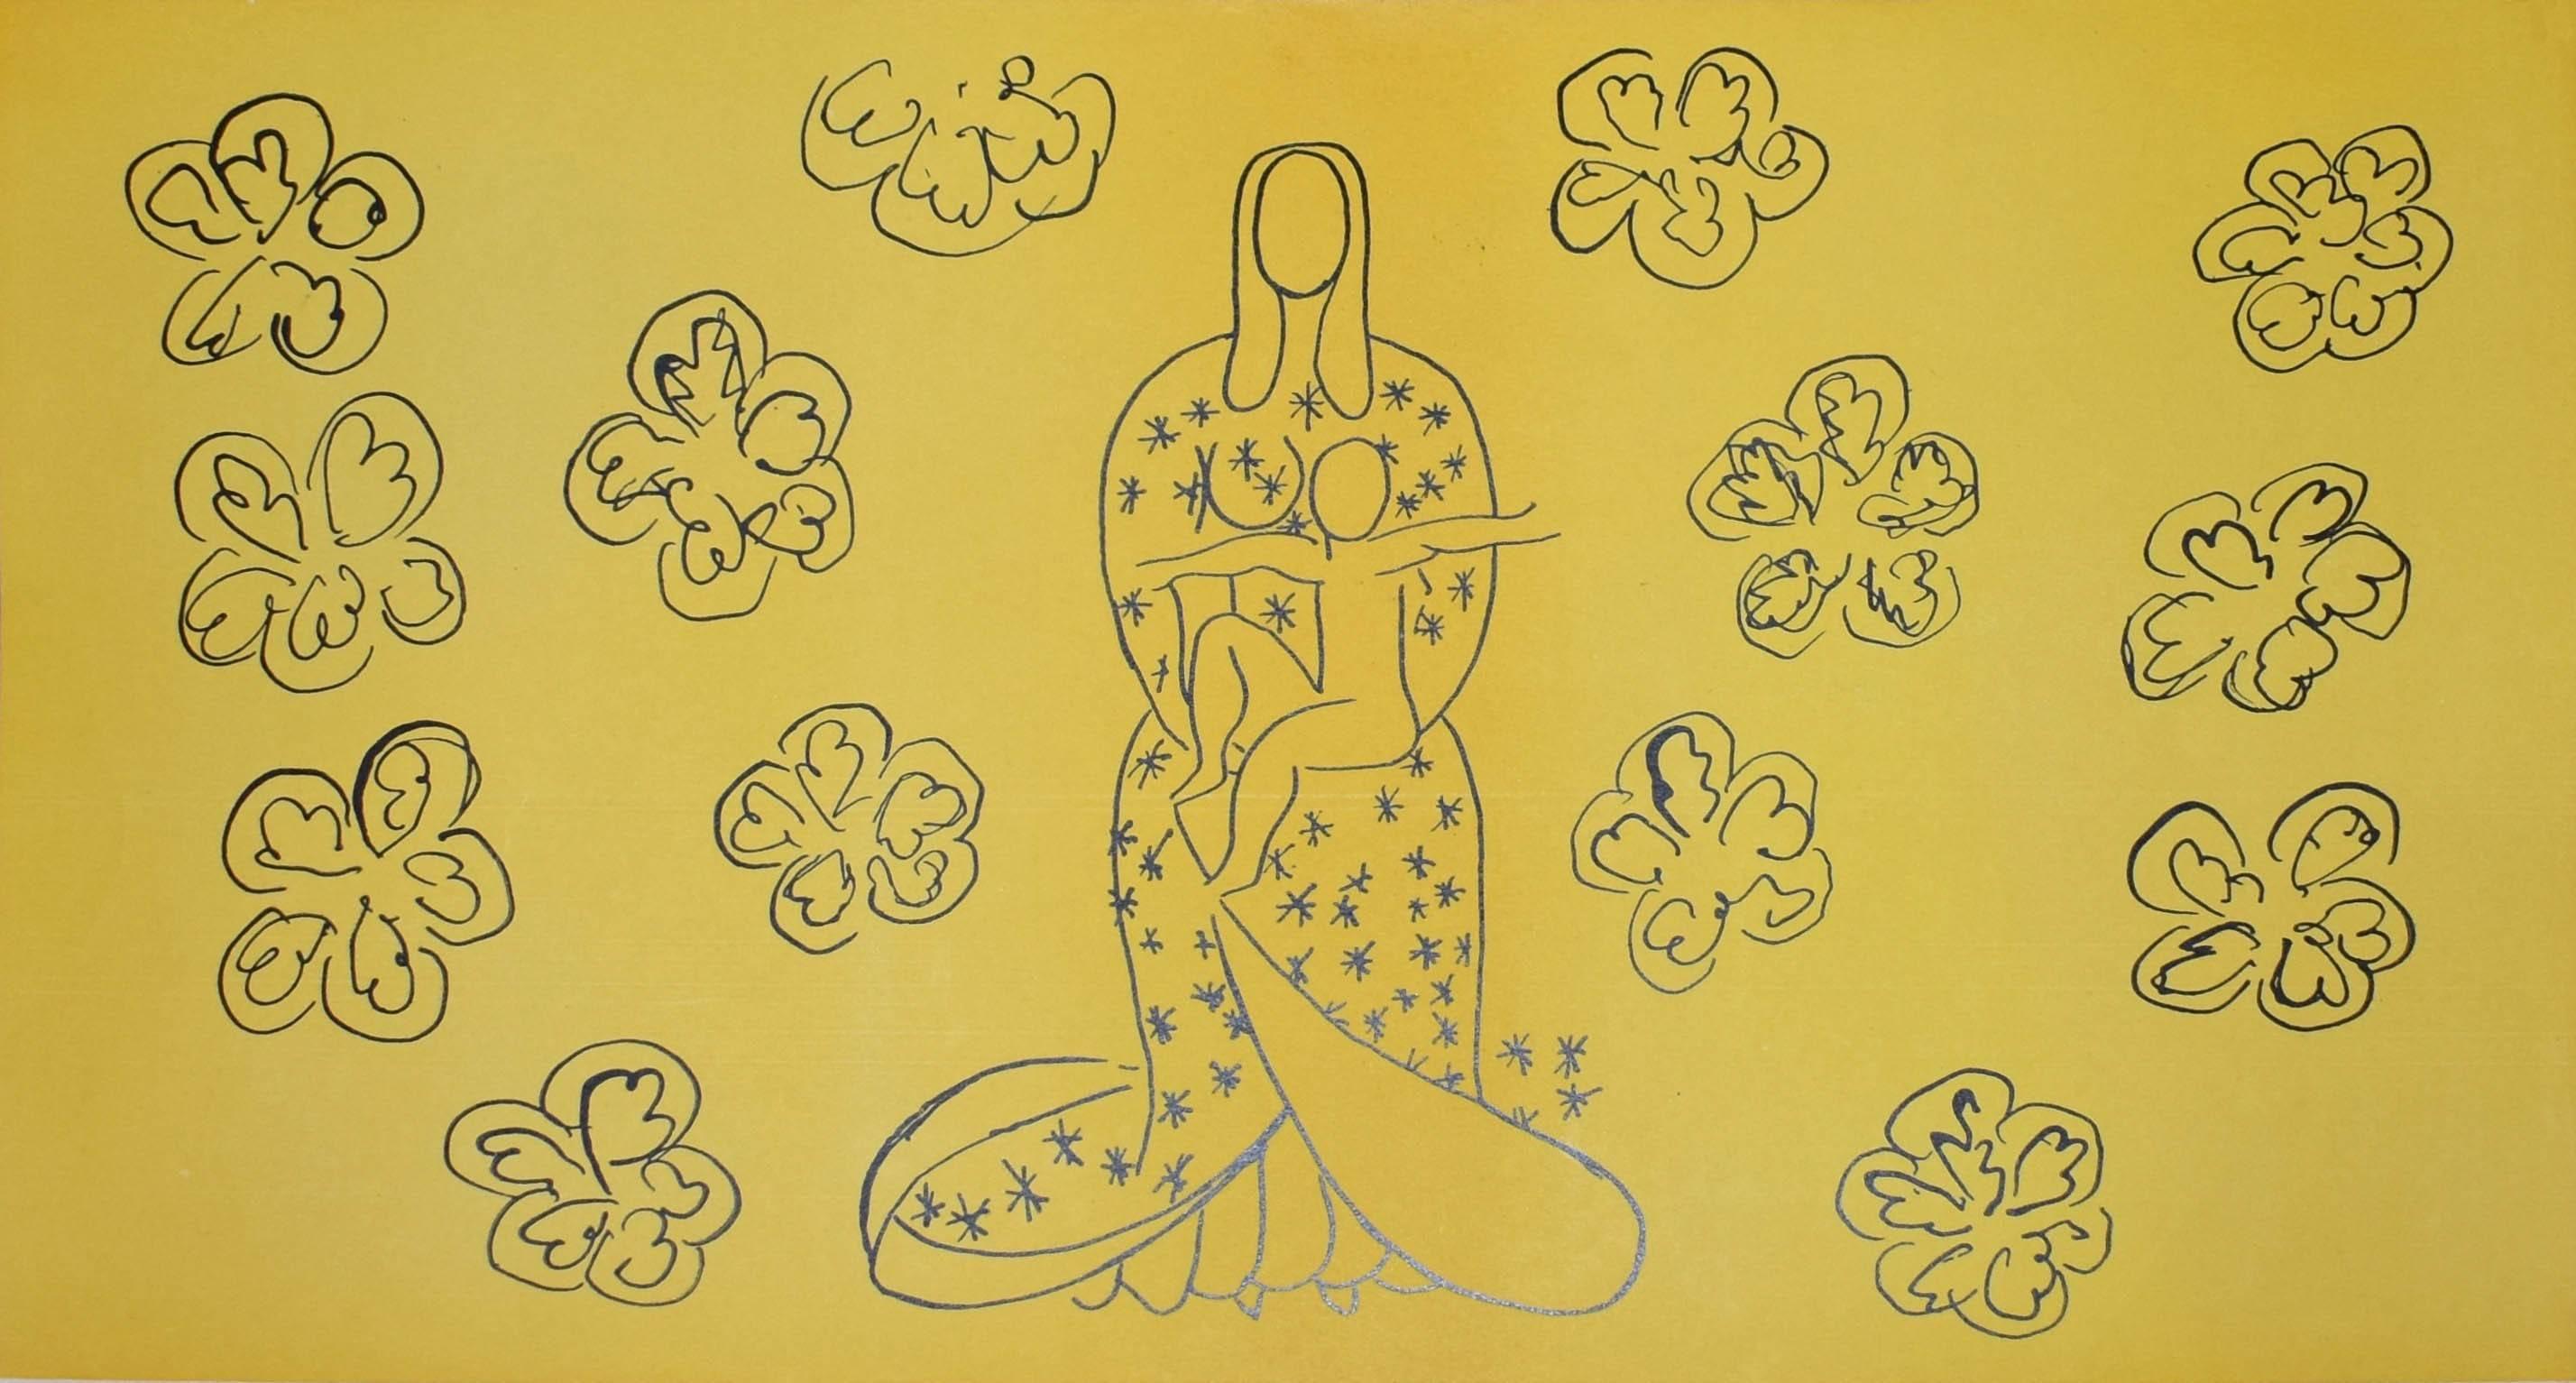 La Vierge et l'Enfant - Print by (after) Henri Matisse